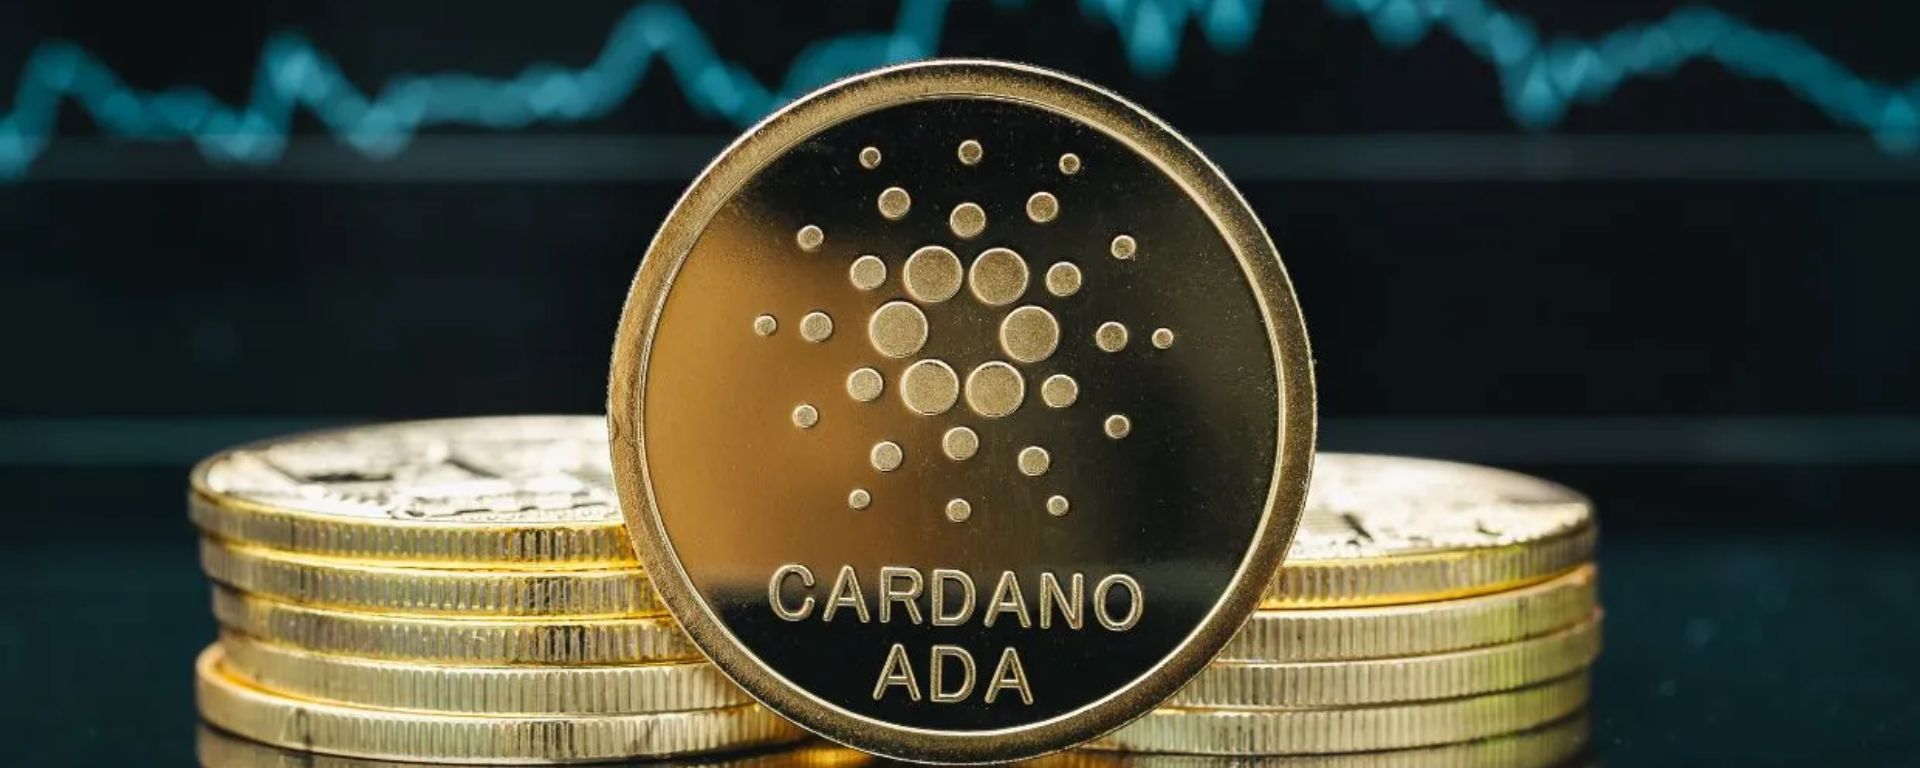 Análise de preço: Cardano (ADA)